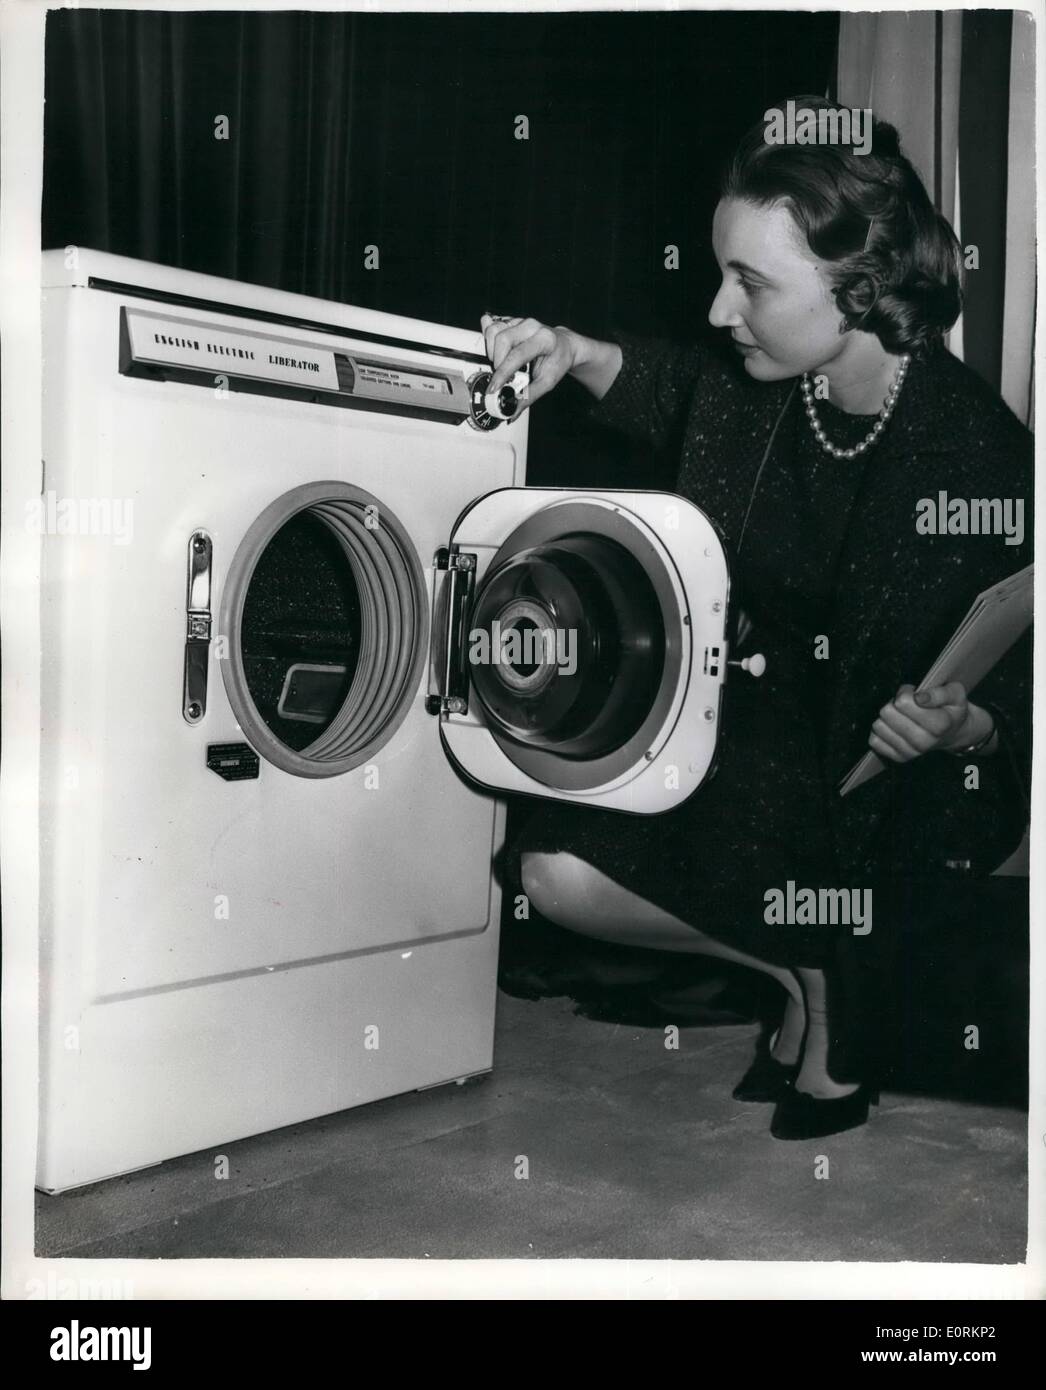 1. Januar 1960 - Einführung in die neue englische elektrische '' Befreier '' Waschmaschine die neue English Electric '' Befreier '' Waschmaschine - wäscht die automatisch - durch die Einstellung der eine einzigartige Zifferblatt - heizt - - Spülungen - Spin trocknet etc.. Das Zifferblatt ist für jede Art von Material einstellbar, gewaschen werden. Die Kopfnoten sind zwischen 6 und 7 lbs zu einem Zeitpunkt - zeigte sich im Savoy Hotel. Preis 105 Gns... Keystone-Fotoshows:-Miss Jill Pfund-Ecke von Kensington, untersucht die neue English Electric '' Befreier '' im Savoy Hotel. Stockfoto